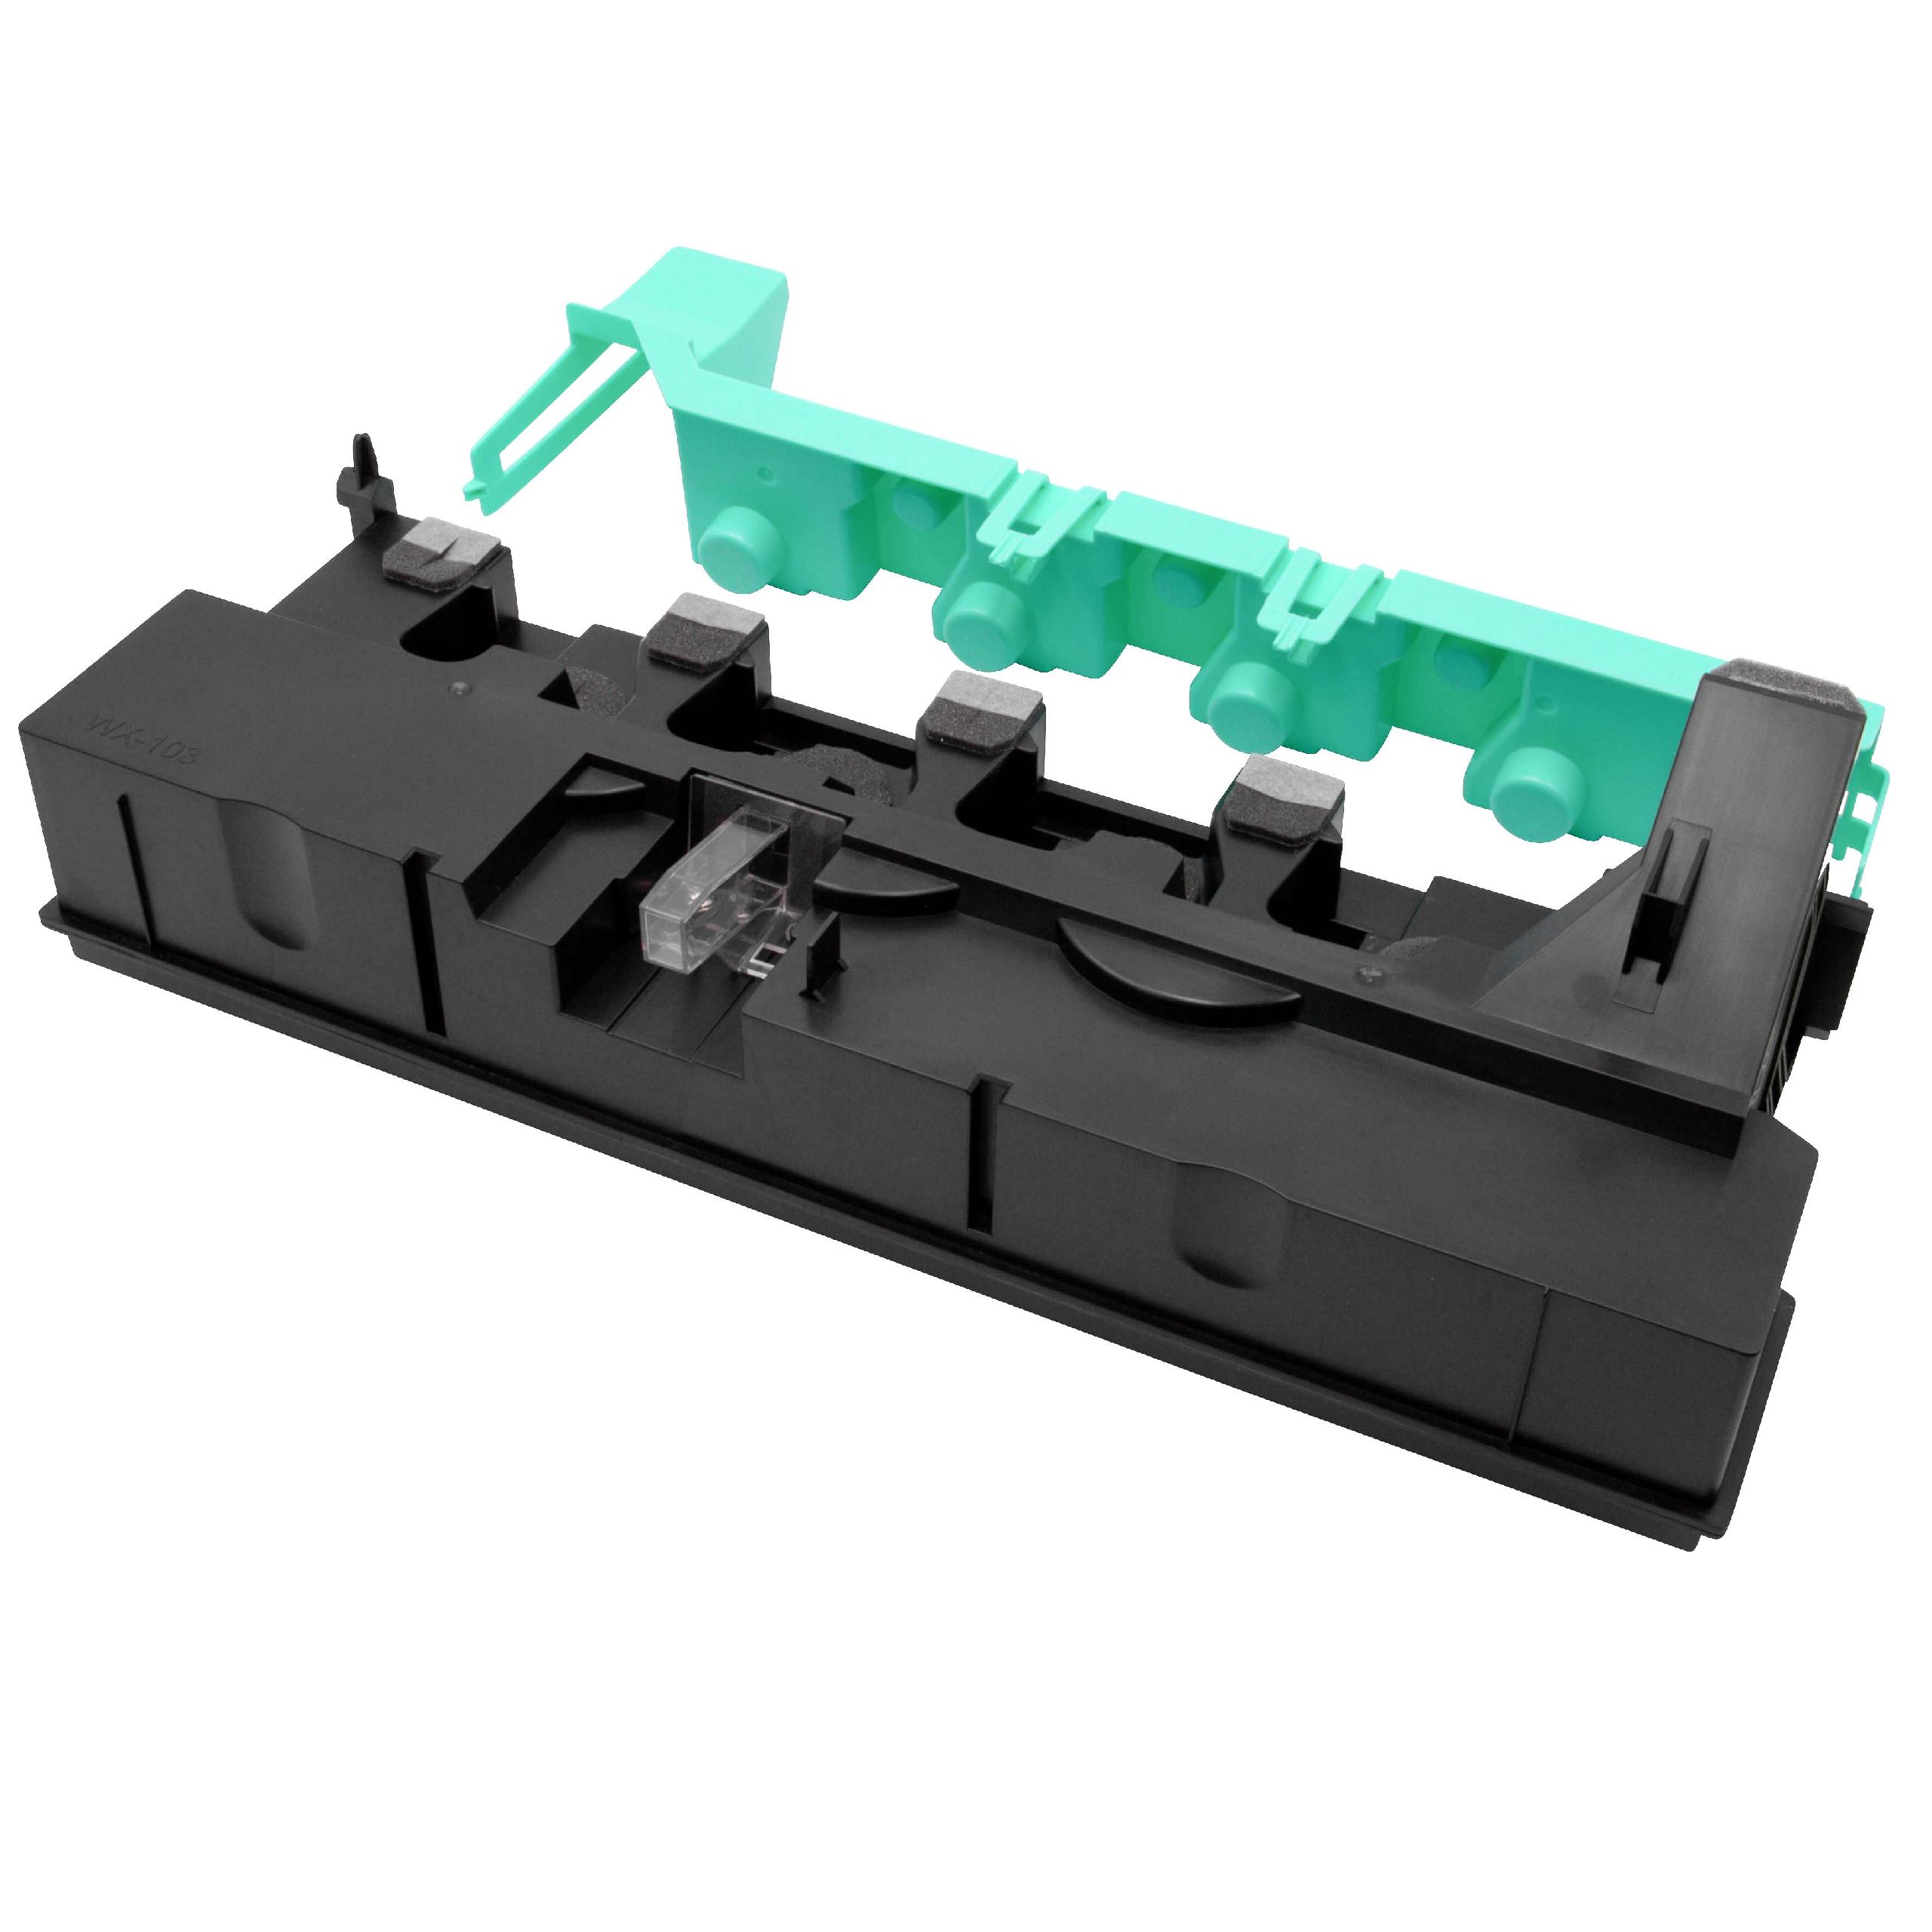 Pojemnik na zużyty toner do drukarki laserowej zam. Konica Minolta WX-103, A4NN-WY3, A4NN-WY1 - czarny